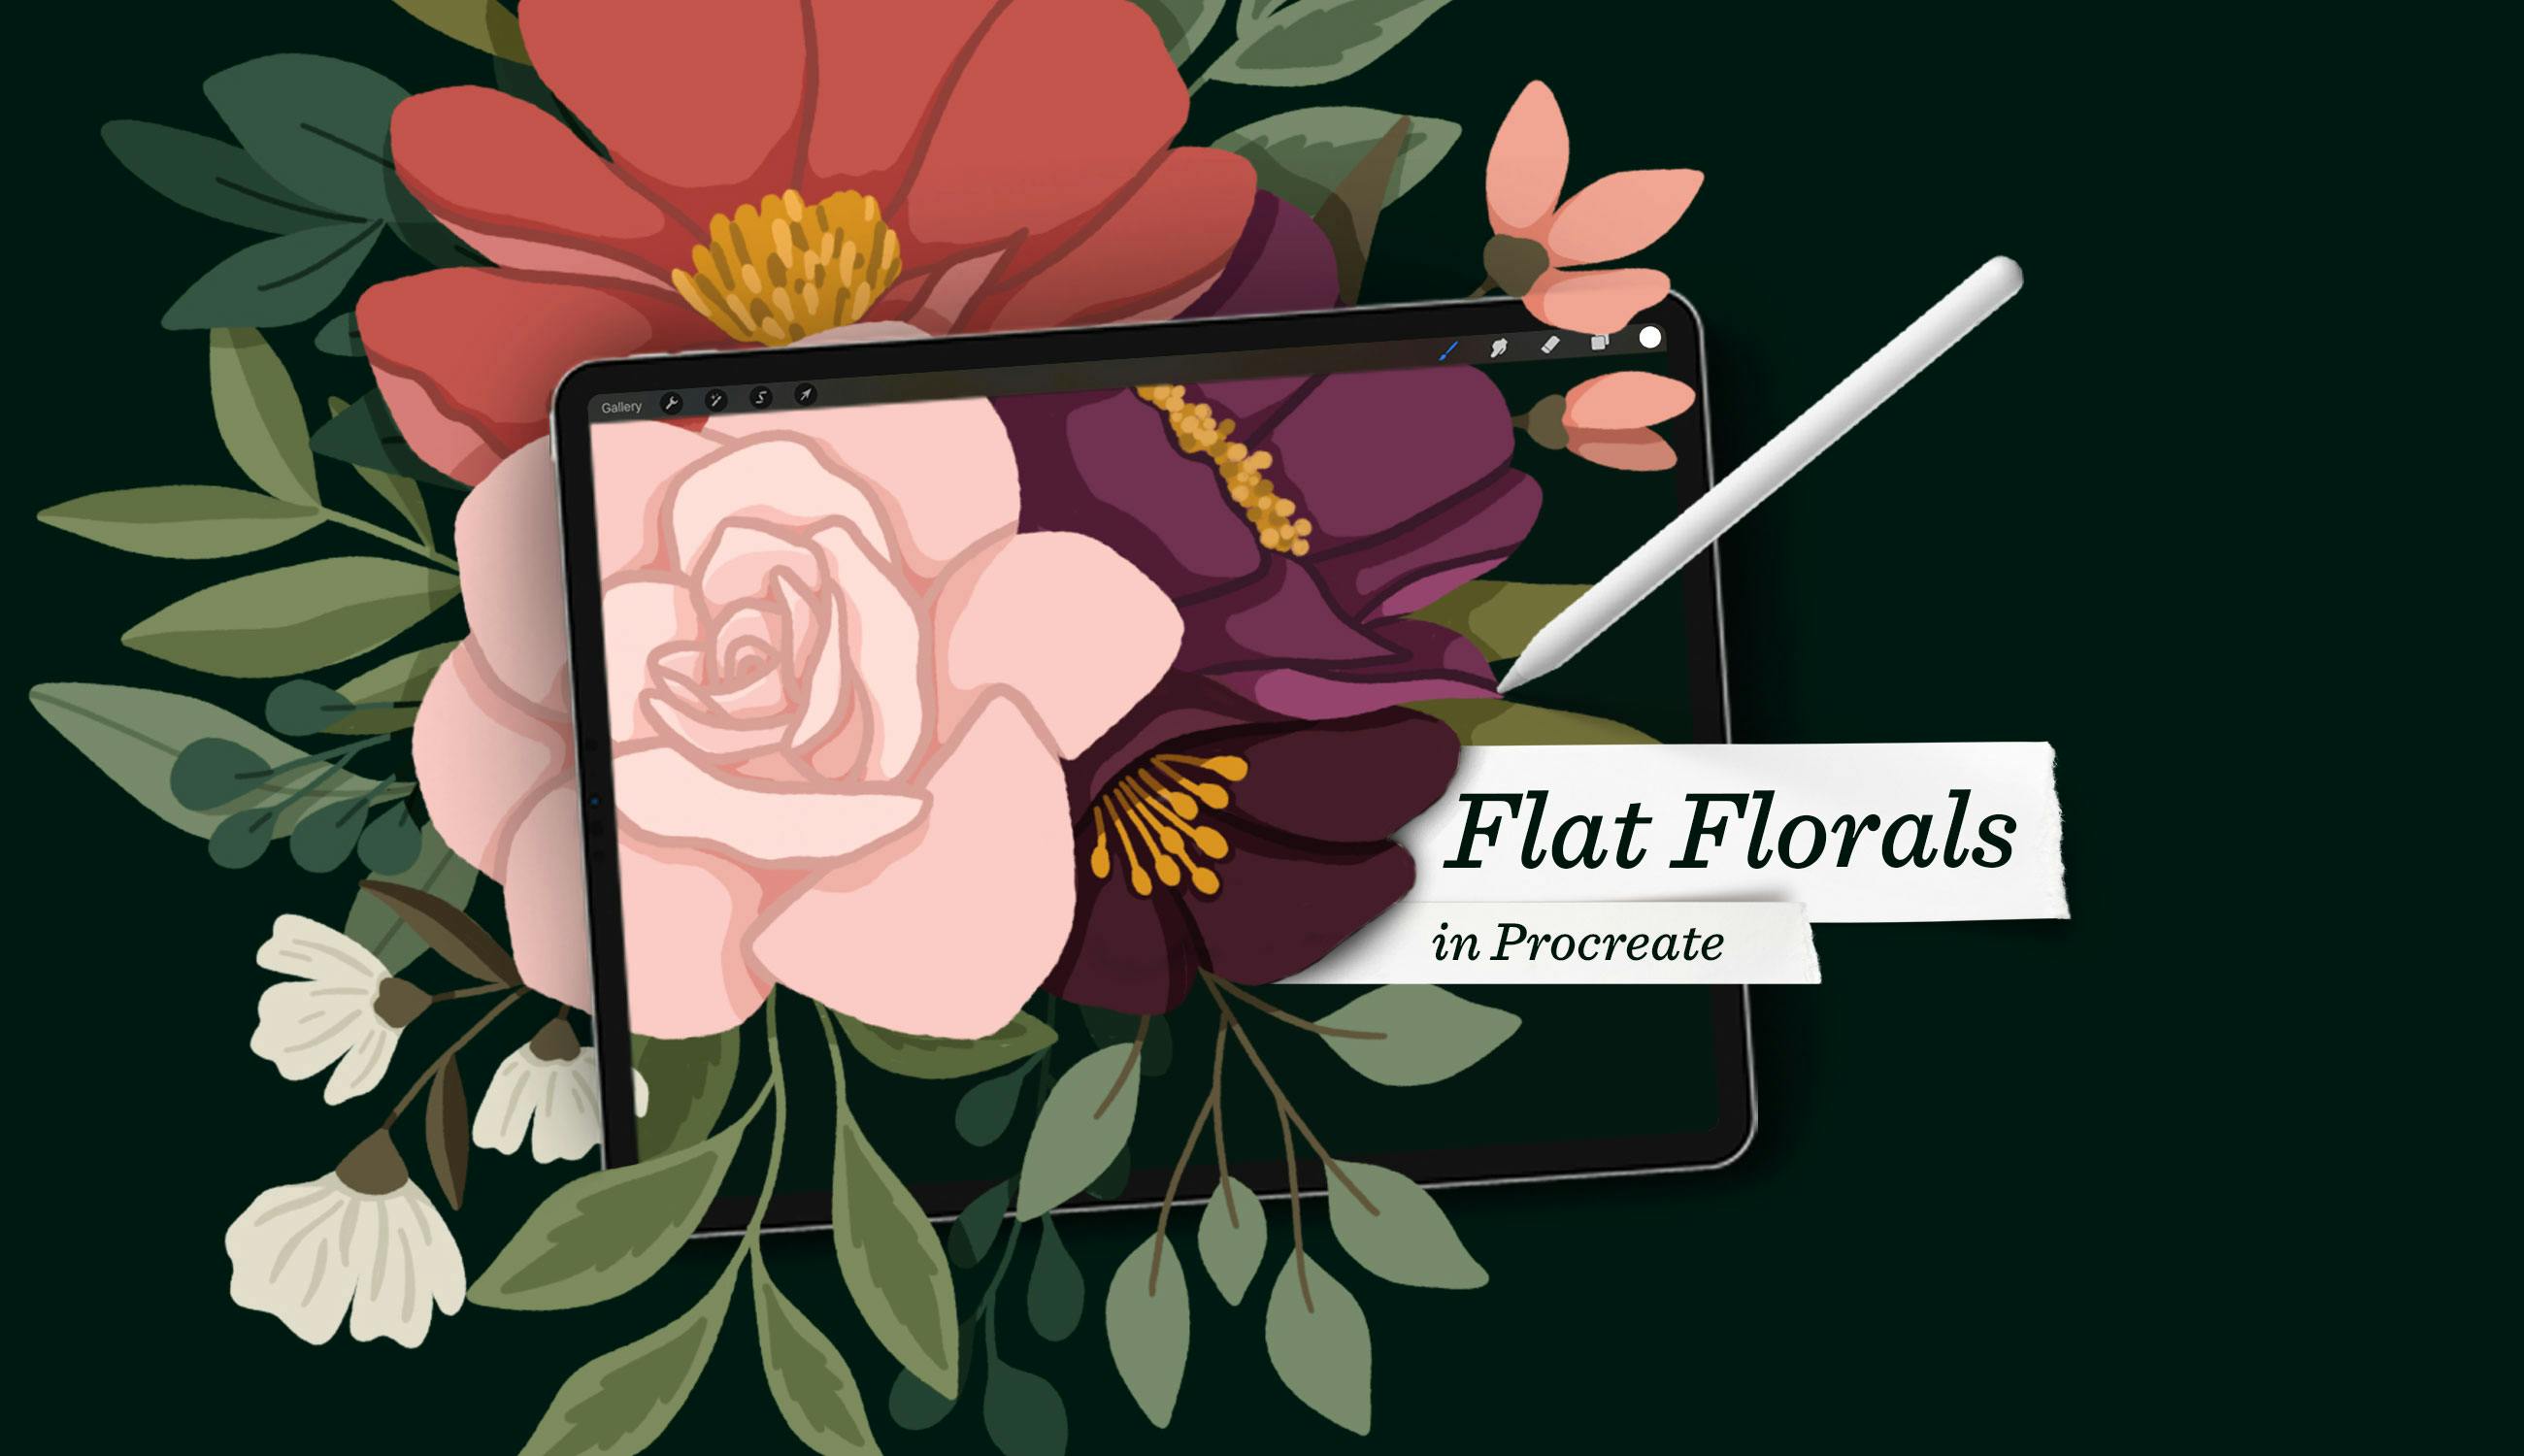 Flat Florals in Procreate